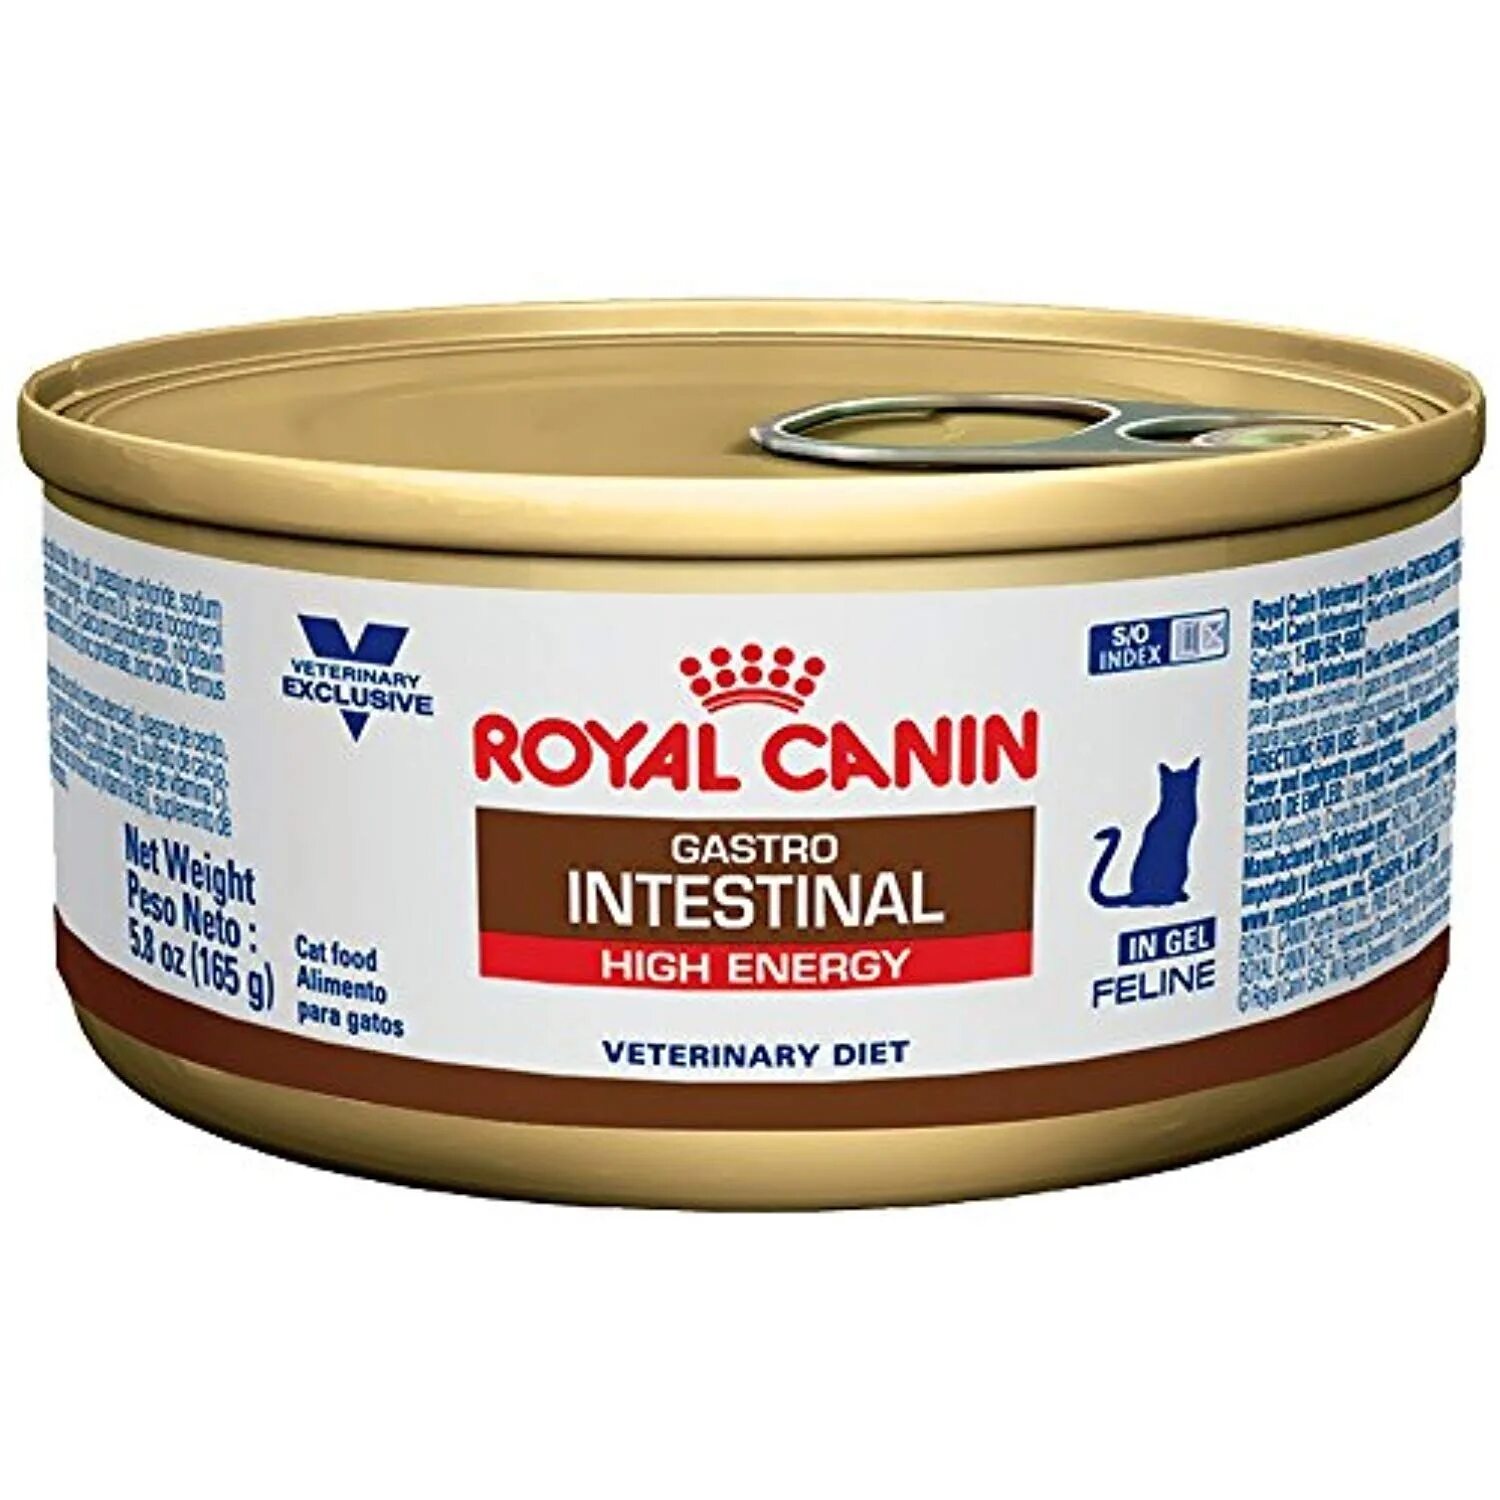 Royal canin intestinal для кошек. Паштет Роял Канин для кошек Gastrointestinal. Паштет гастро Интестинал для кошек. Роял Канин гастро Интестинал паштет. Роял Канин гастро паштет для кошек.